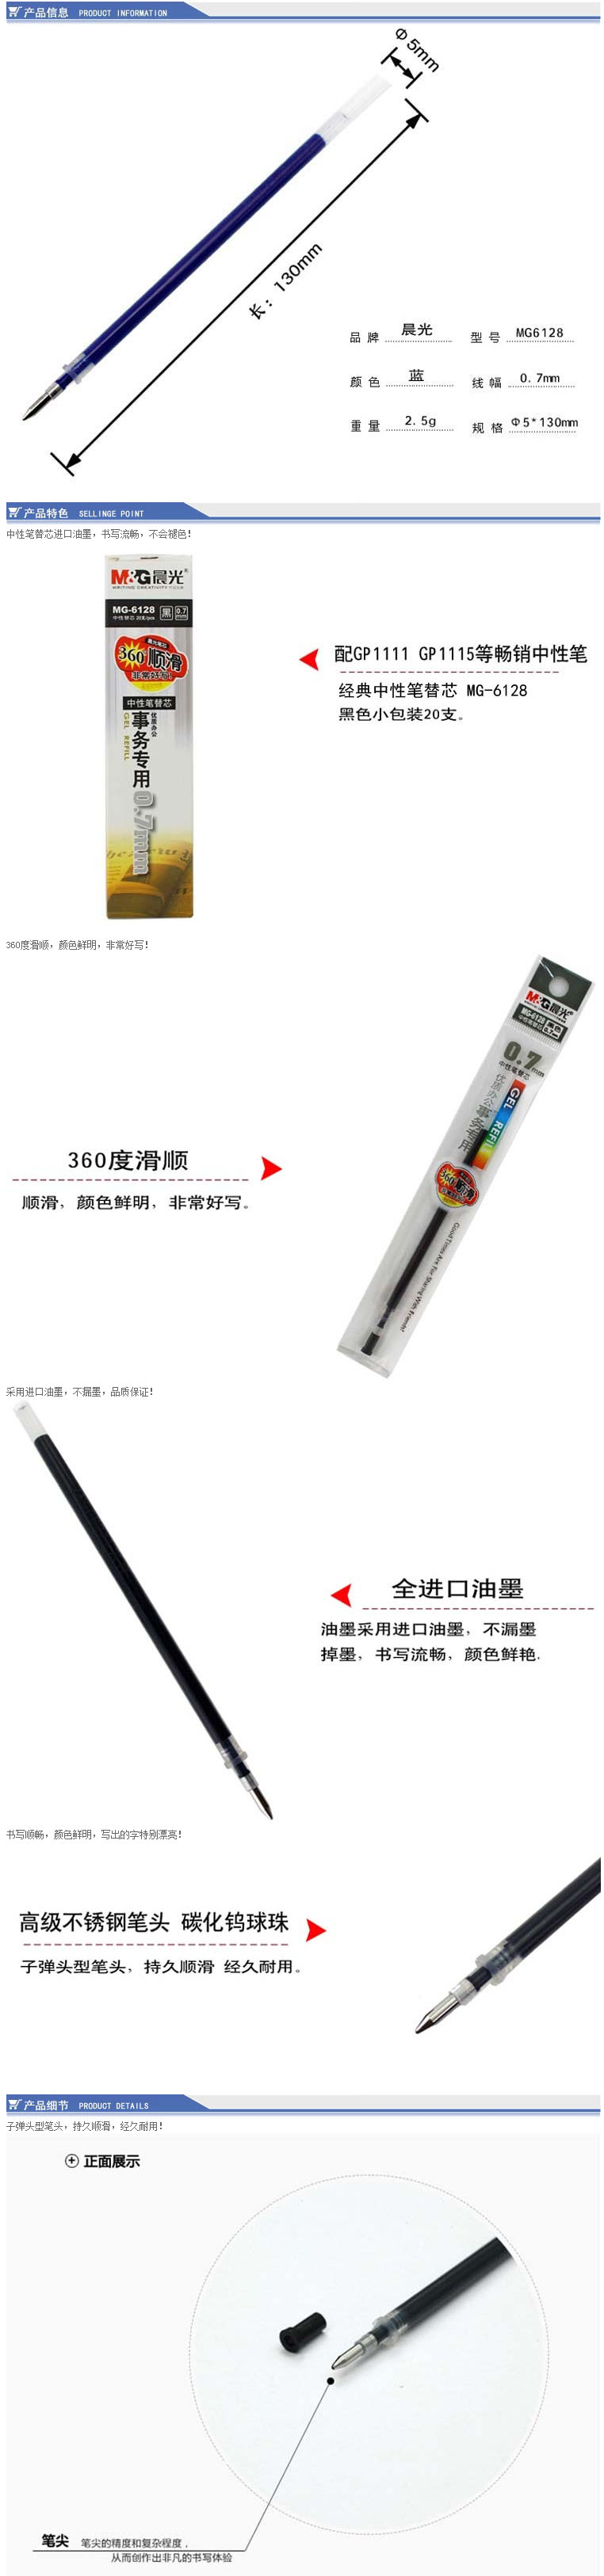 【晨光MG6128蓝色笔芯】晨光（M&G）MG6128 子弹头型中性笔替芯 0.7mm 蓝色 20支.jpg